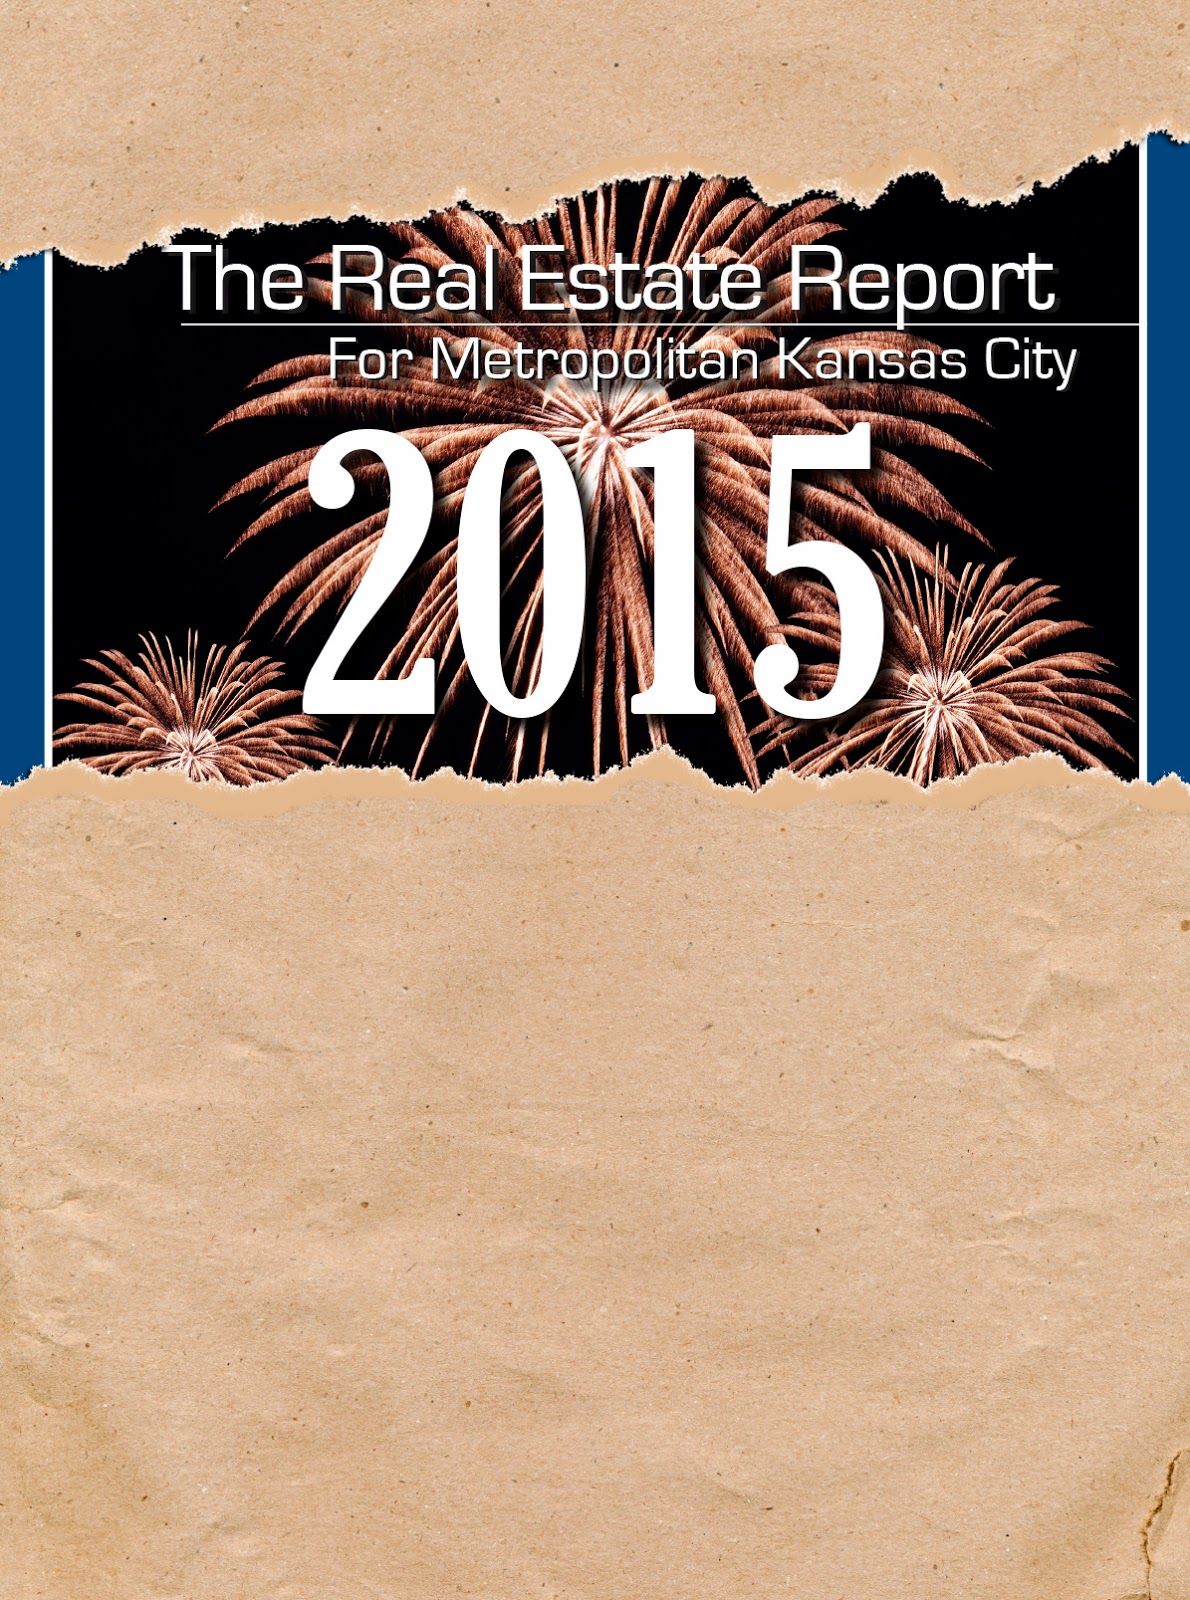 Market Report 2015 Sneak Peak - Day 7 Office